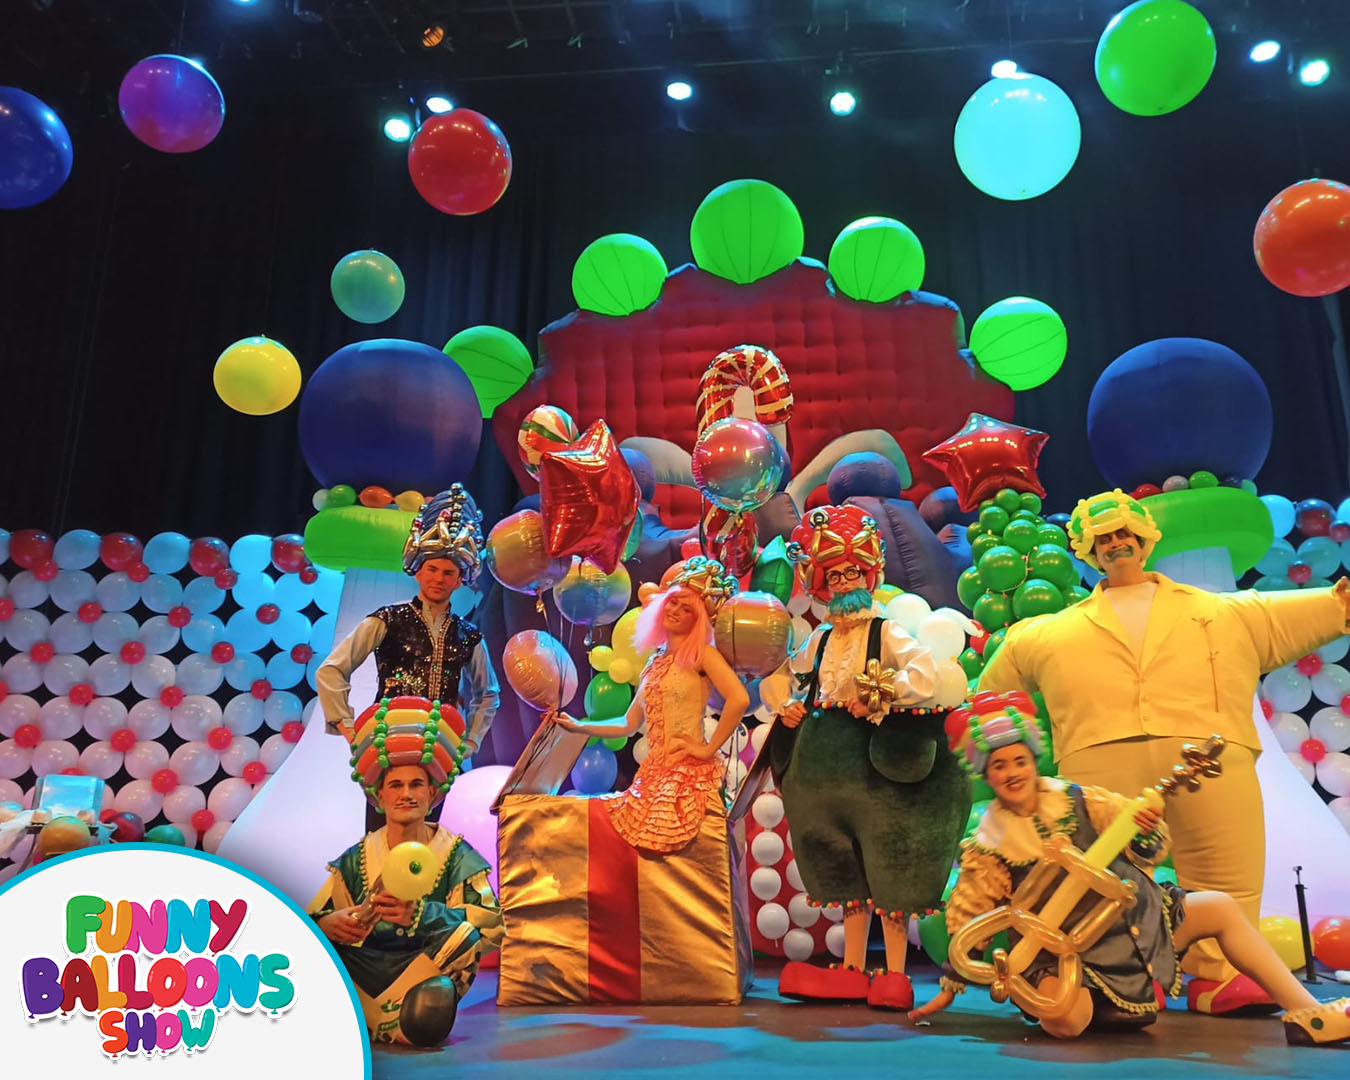 Funny Balloons Show – cамое веселое шоу из Европы этим летом в Израиле!